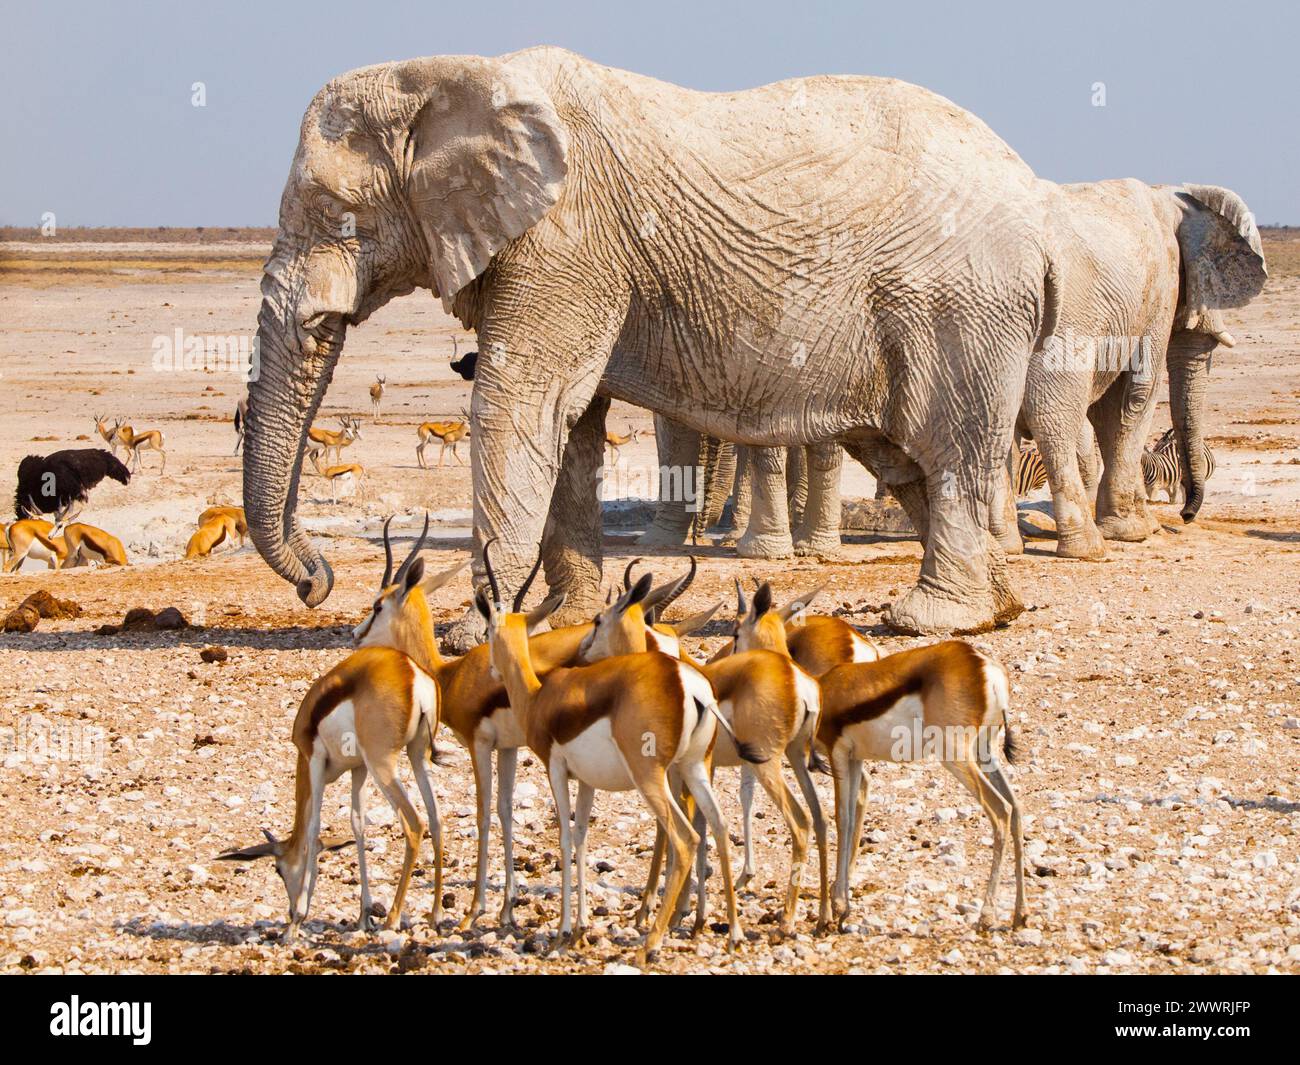 Many elephants and impalas at crowded waterhole Nebrownii, Etosha National Park, Namibia Stock Photo